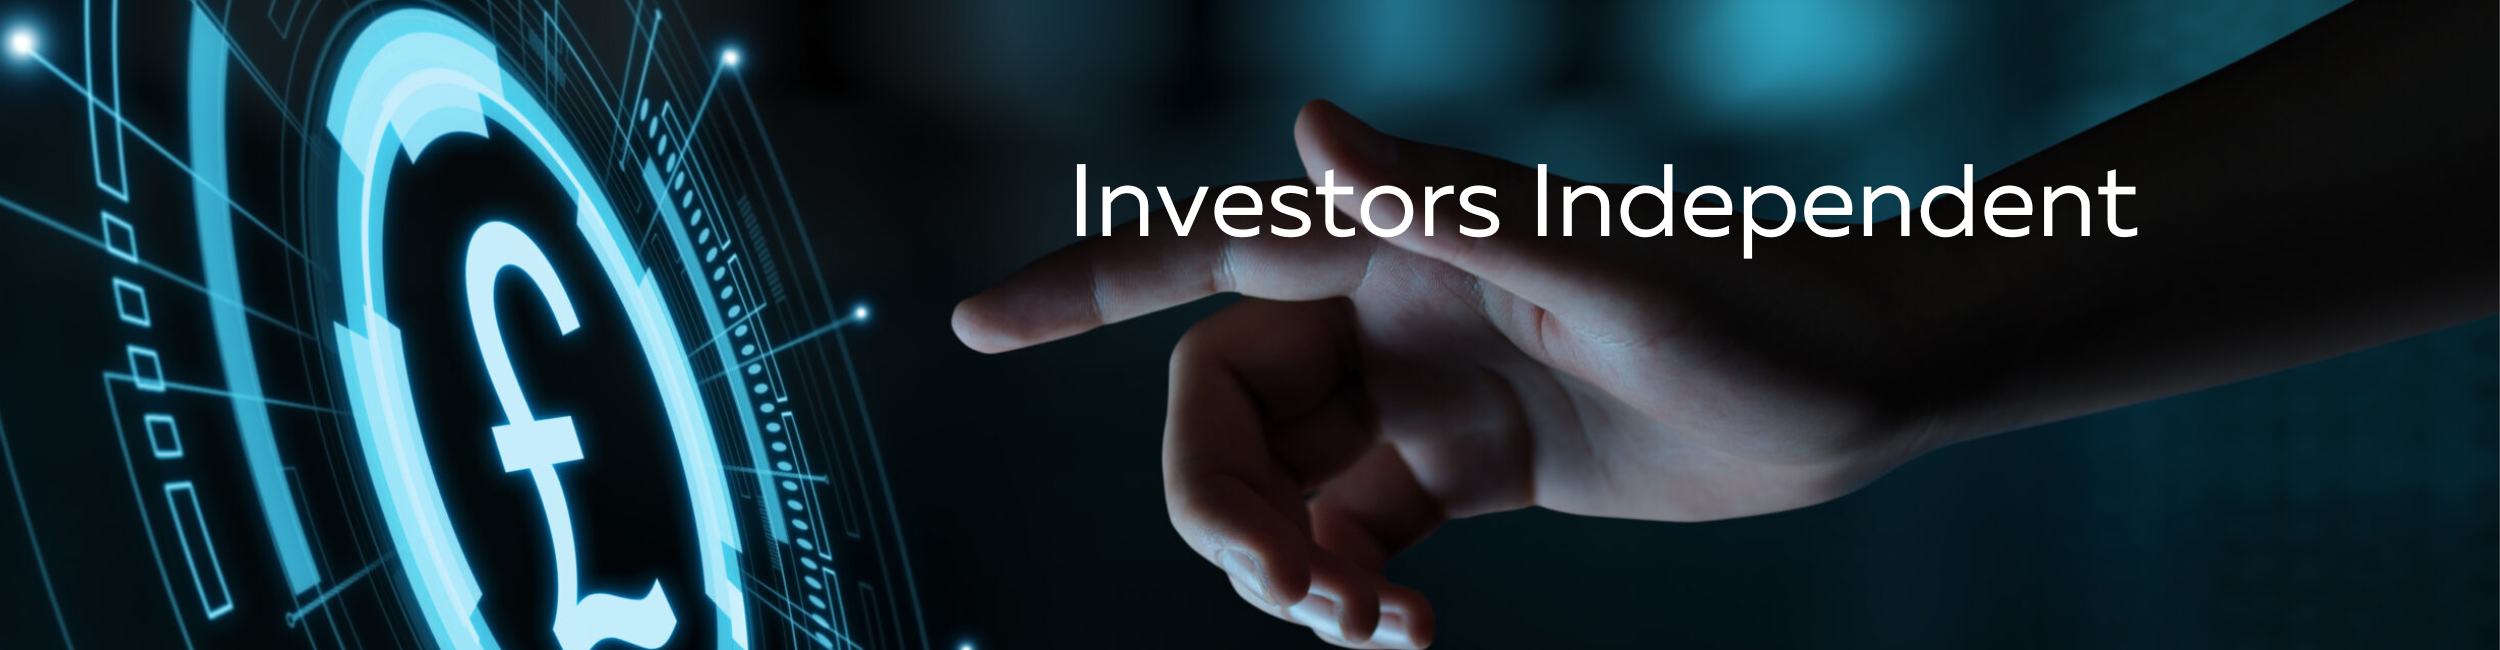 Investors Independent